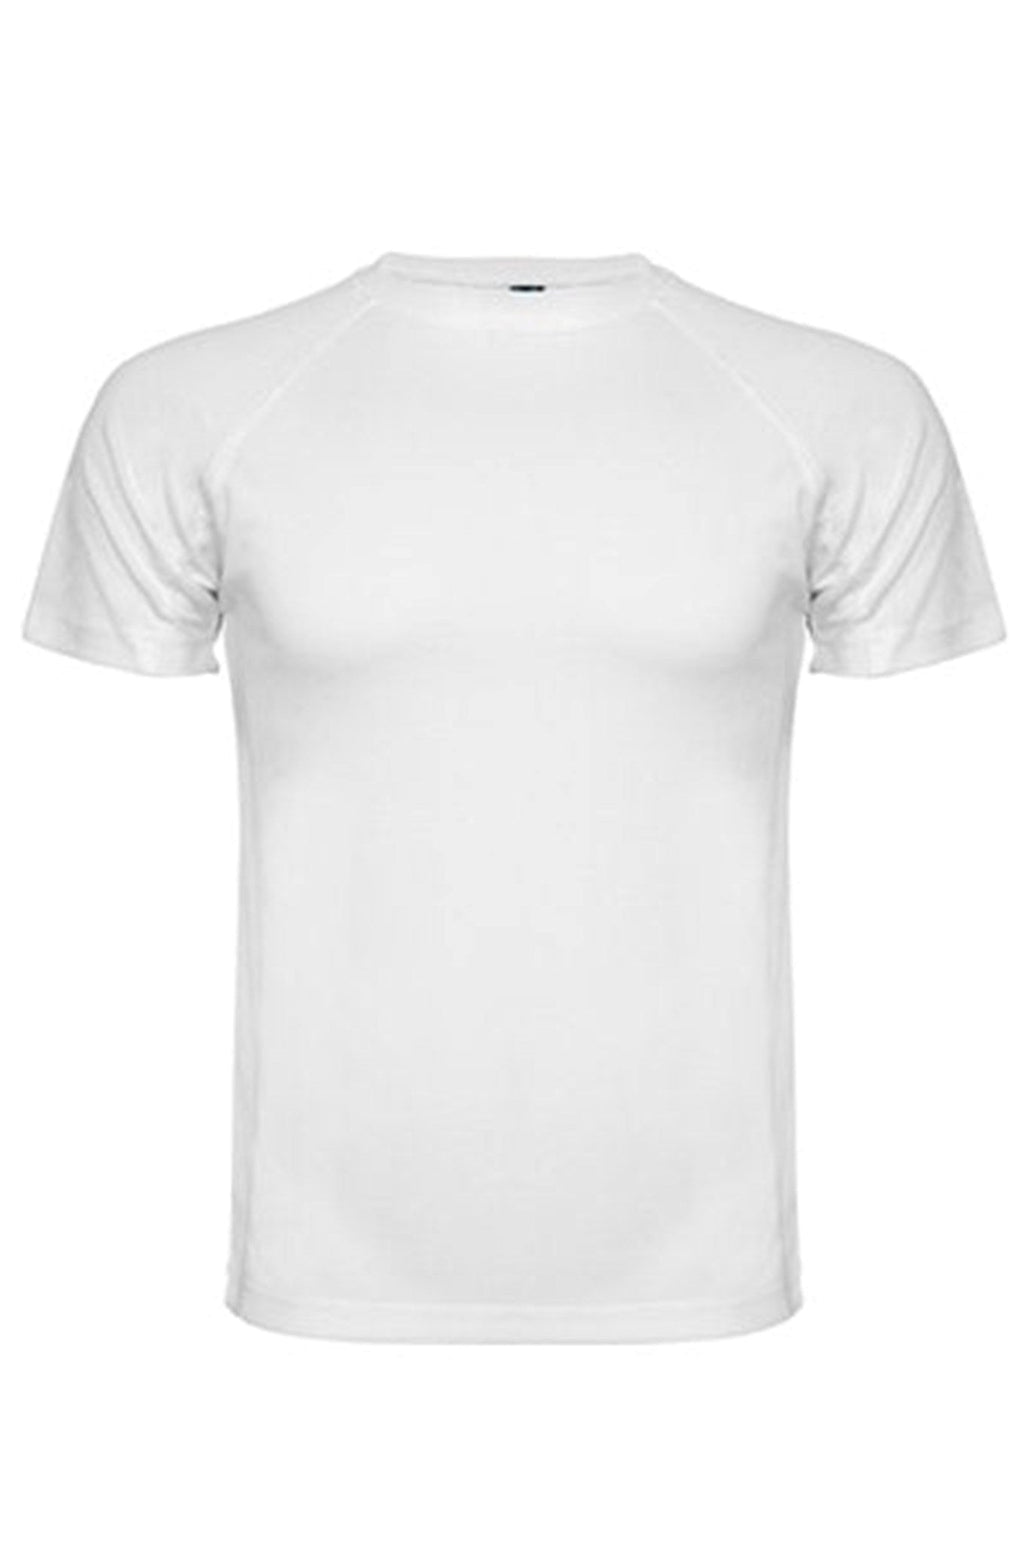 Tréningové tričko - biele